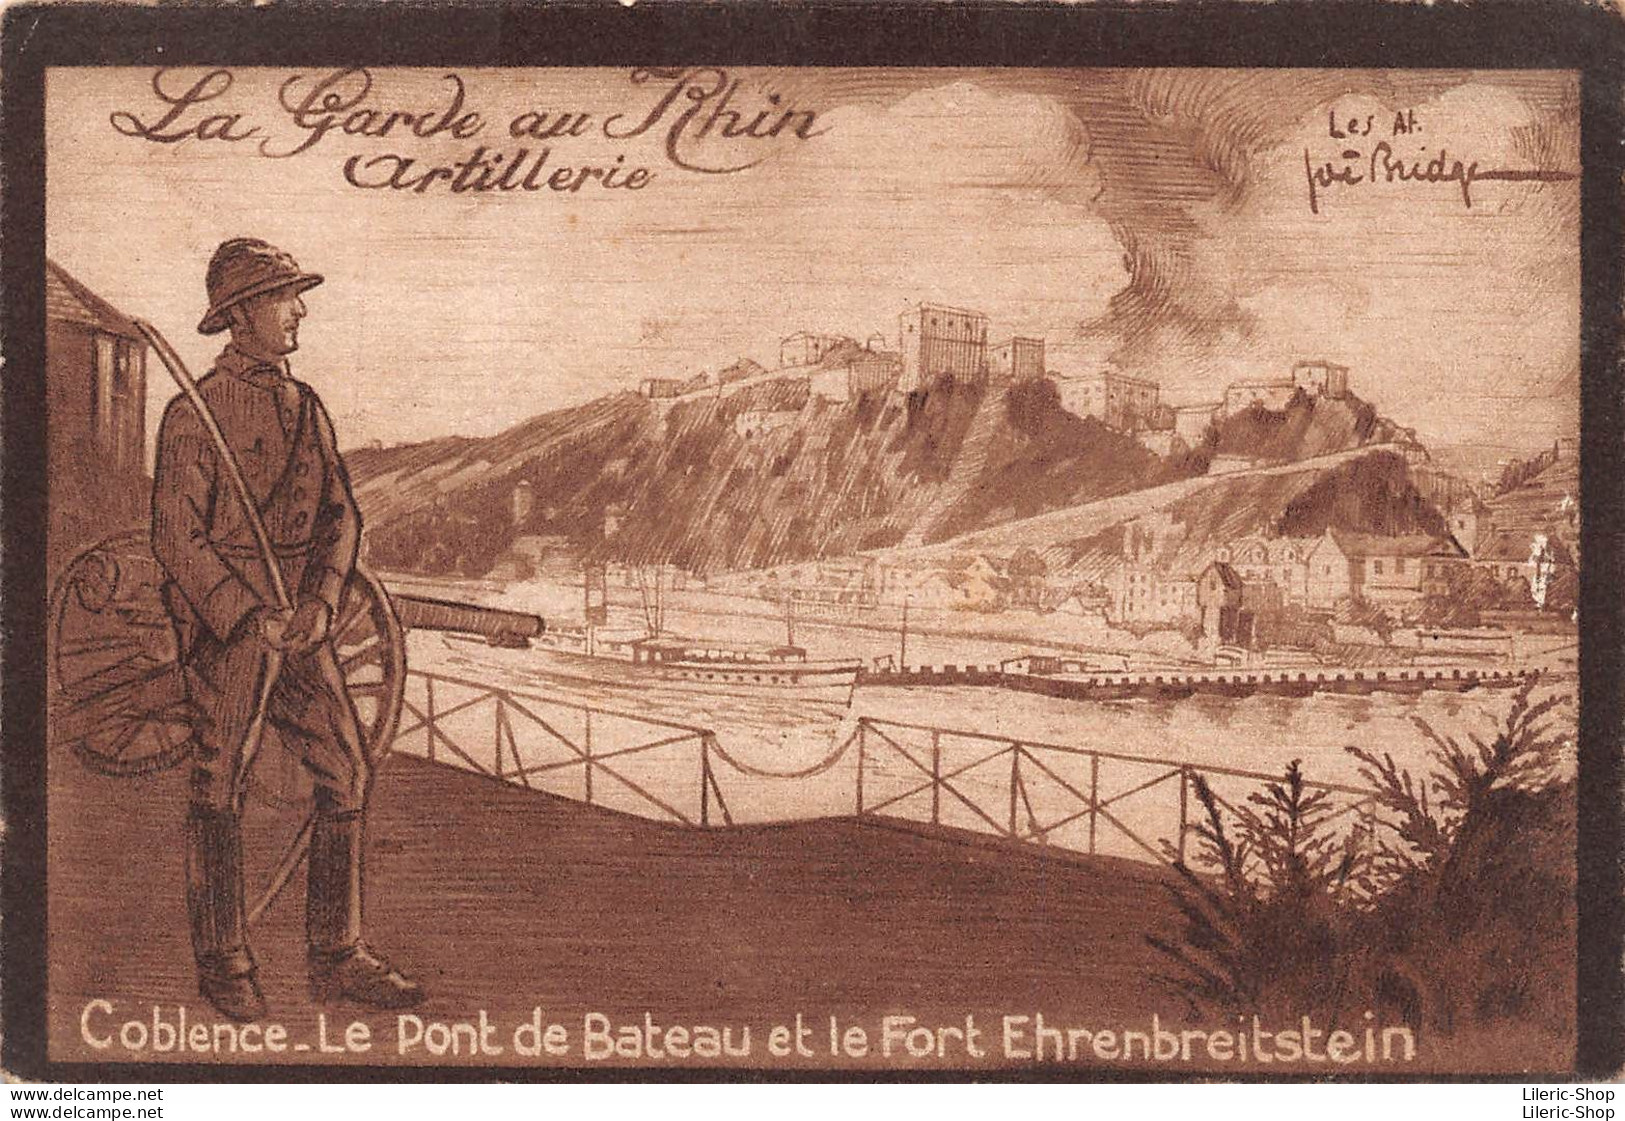 La Garde Au Rhin Artillerie Coblence. Le Pont De Bateau Et Le Fort Ehrenbreitstein Illustrateur Joë BRIDGE - Casernes